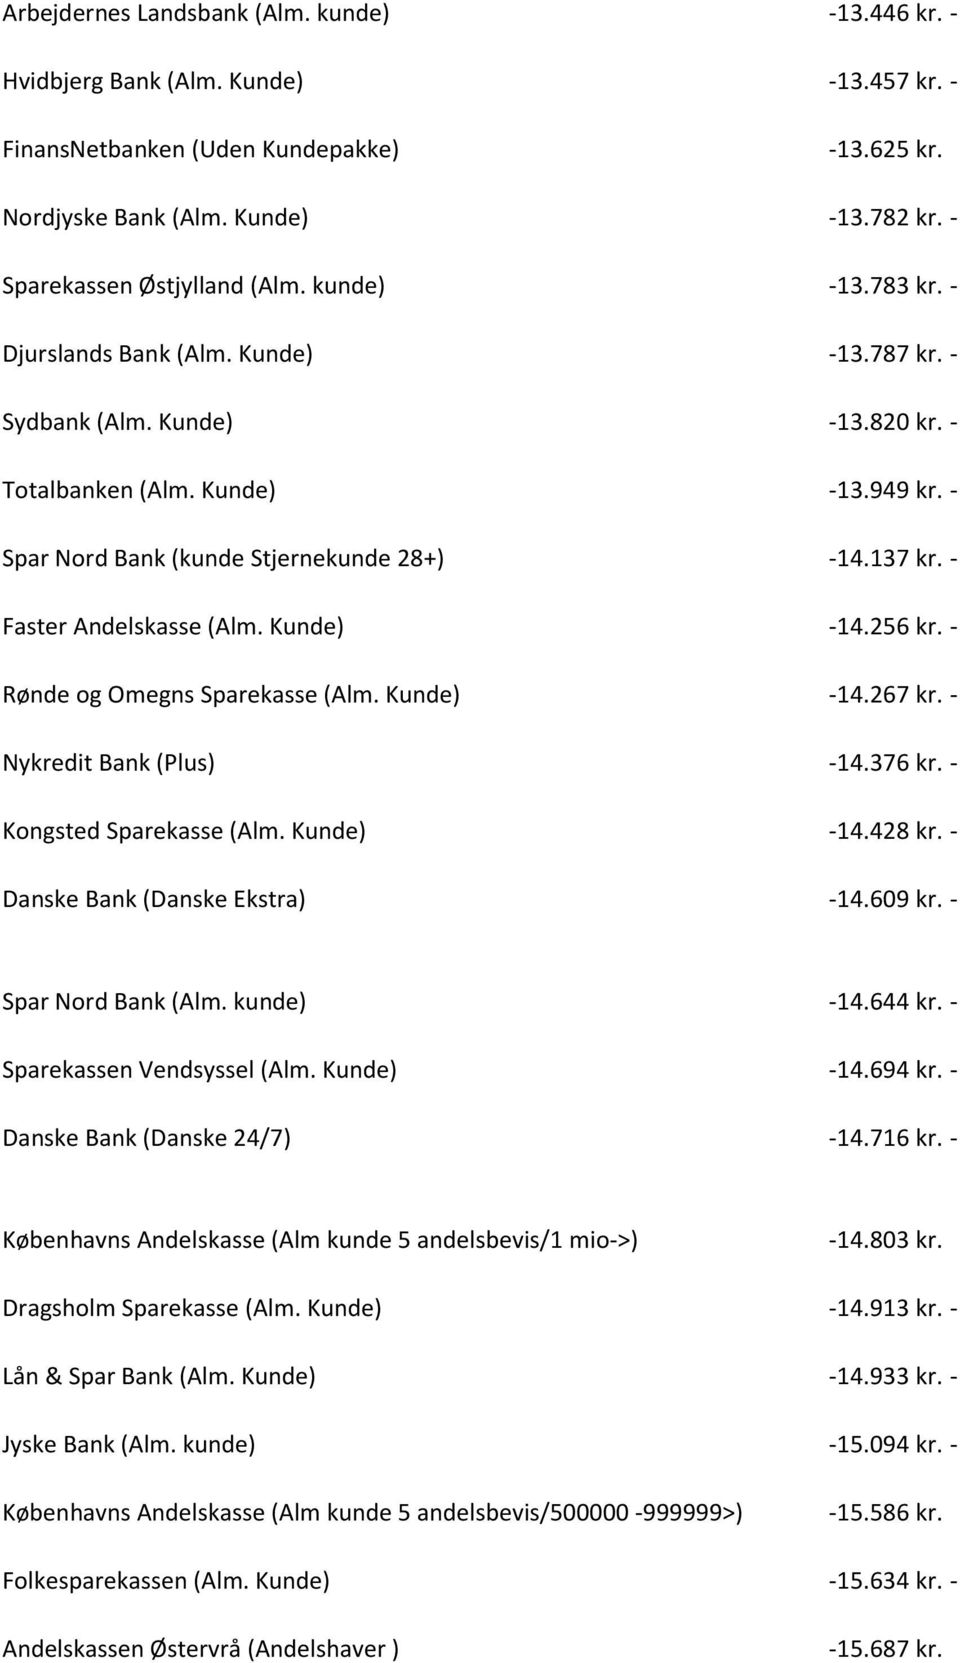 - Spar Nord Bank (kunde Stjernekunde 28+) -14.137 kr. - Faster Andelskasse (Alm. Kunde) -14.256 kr. - Rønde og Omegns Sparekasse (Alm. Kunde) -14.267 kr. - Nykredit Bank (Plus) -14.376 kr.